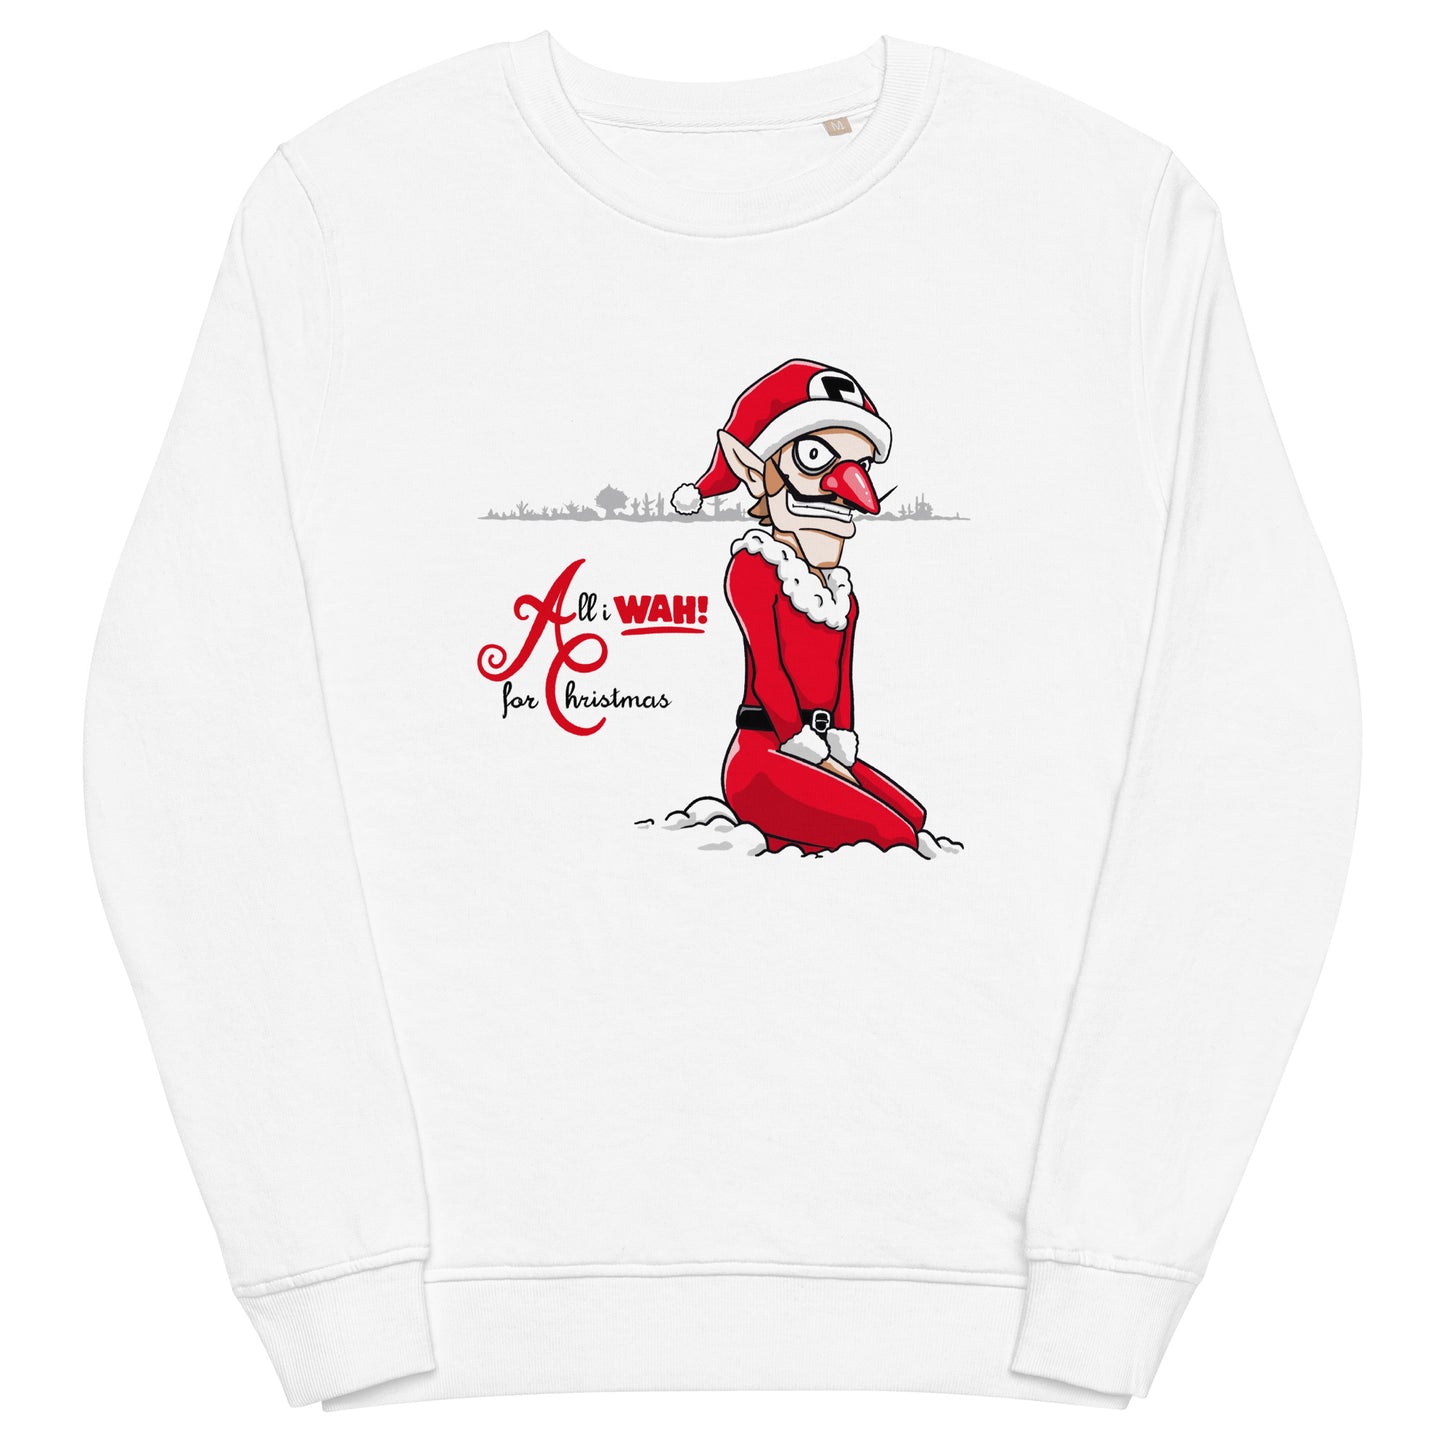 All I WAH! For Christmas - Crewneck Sweatshirt